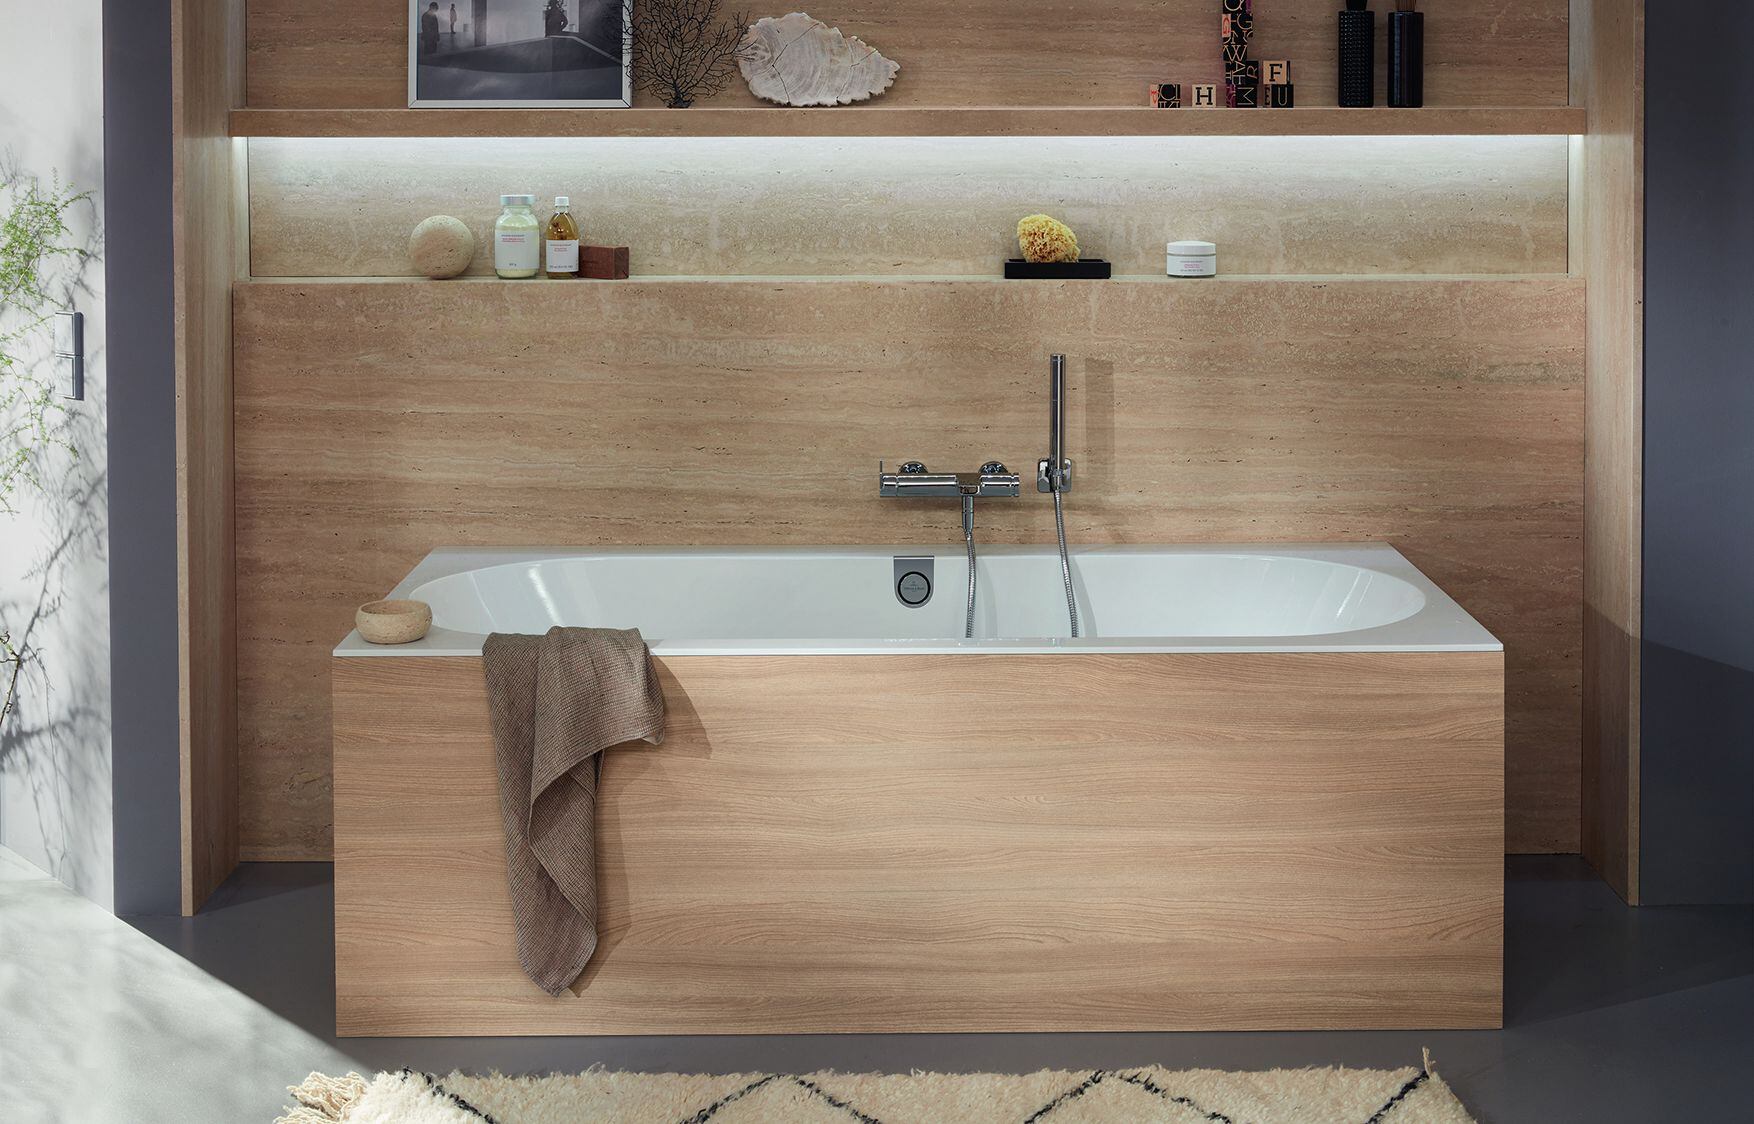 Los materiales naturales, por ejemplo la madera, también agregan color al baño. (Pop up my Bathroom/DPA)